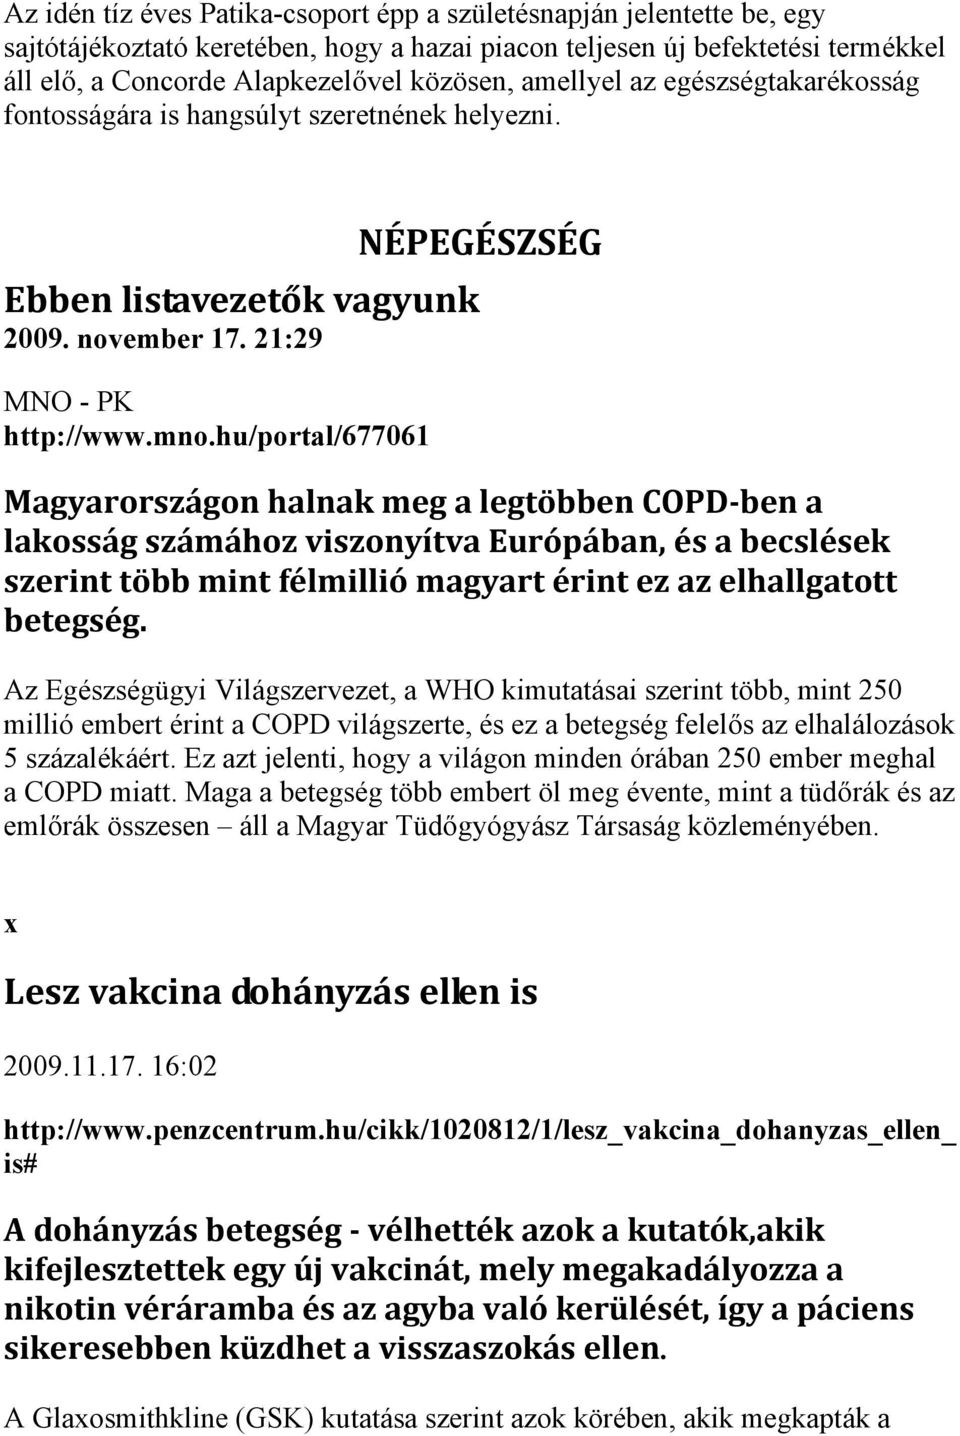 hu/portal/677061 NÉPEGÉSZSÉG Magyarországon halnak meg a legtöbben COPD ben a lakosság számához viszonyítva Európában, és a becslések szerint több mint félmillió magyart érint ez az elhallgatott